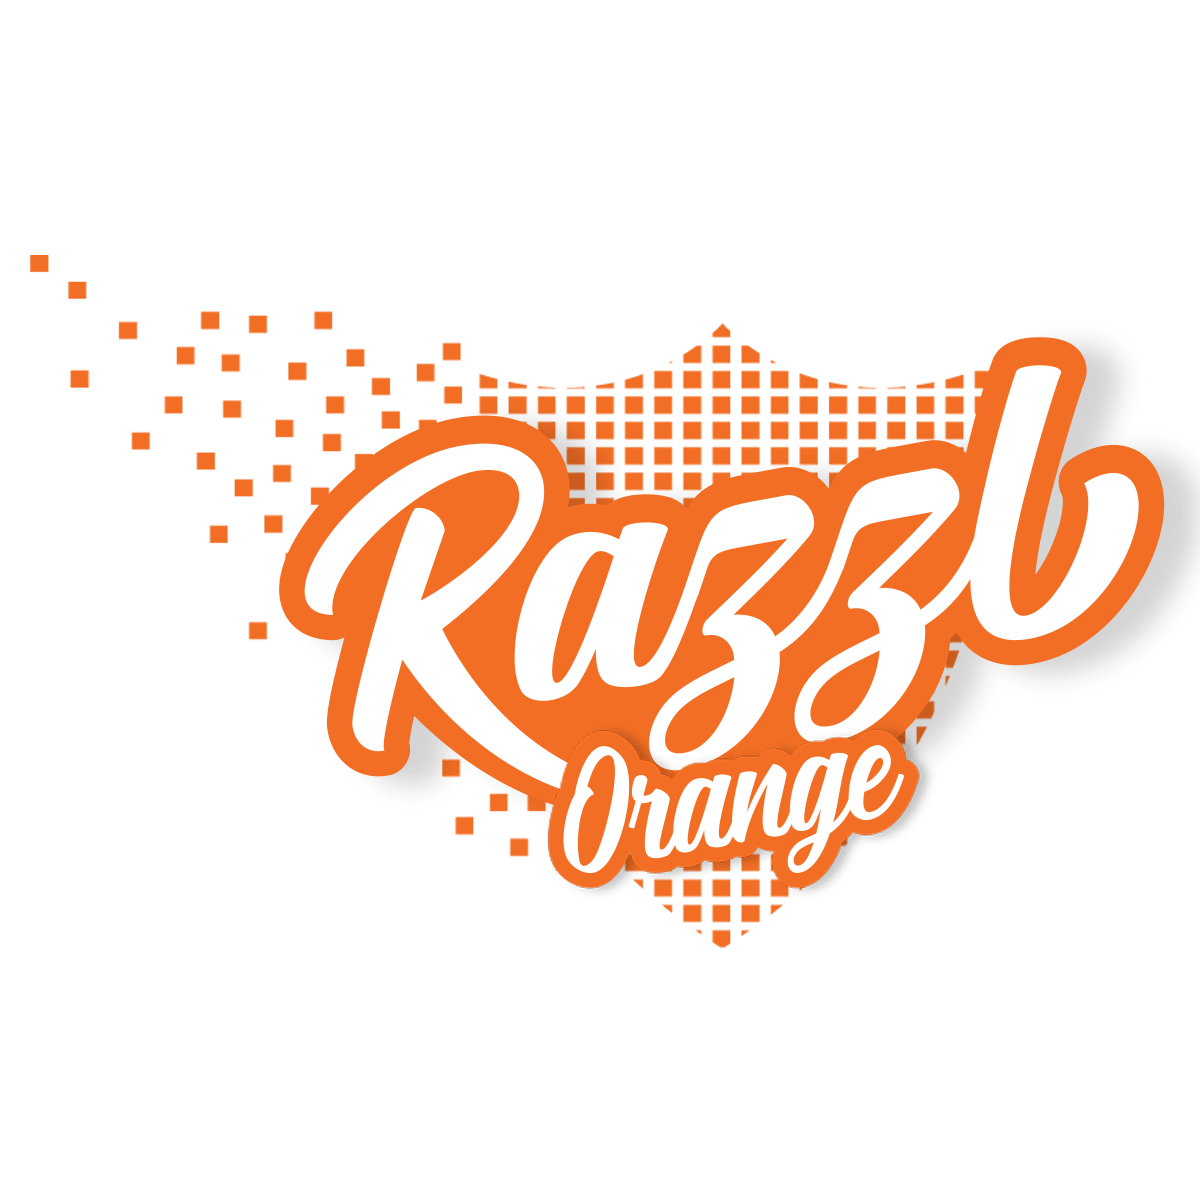 Orange Razzl